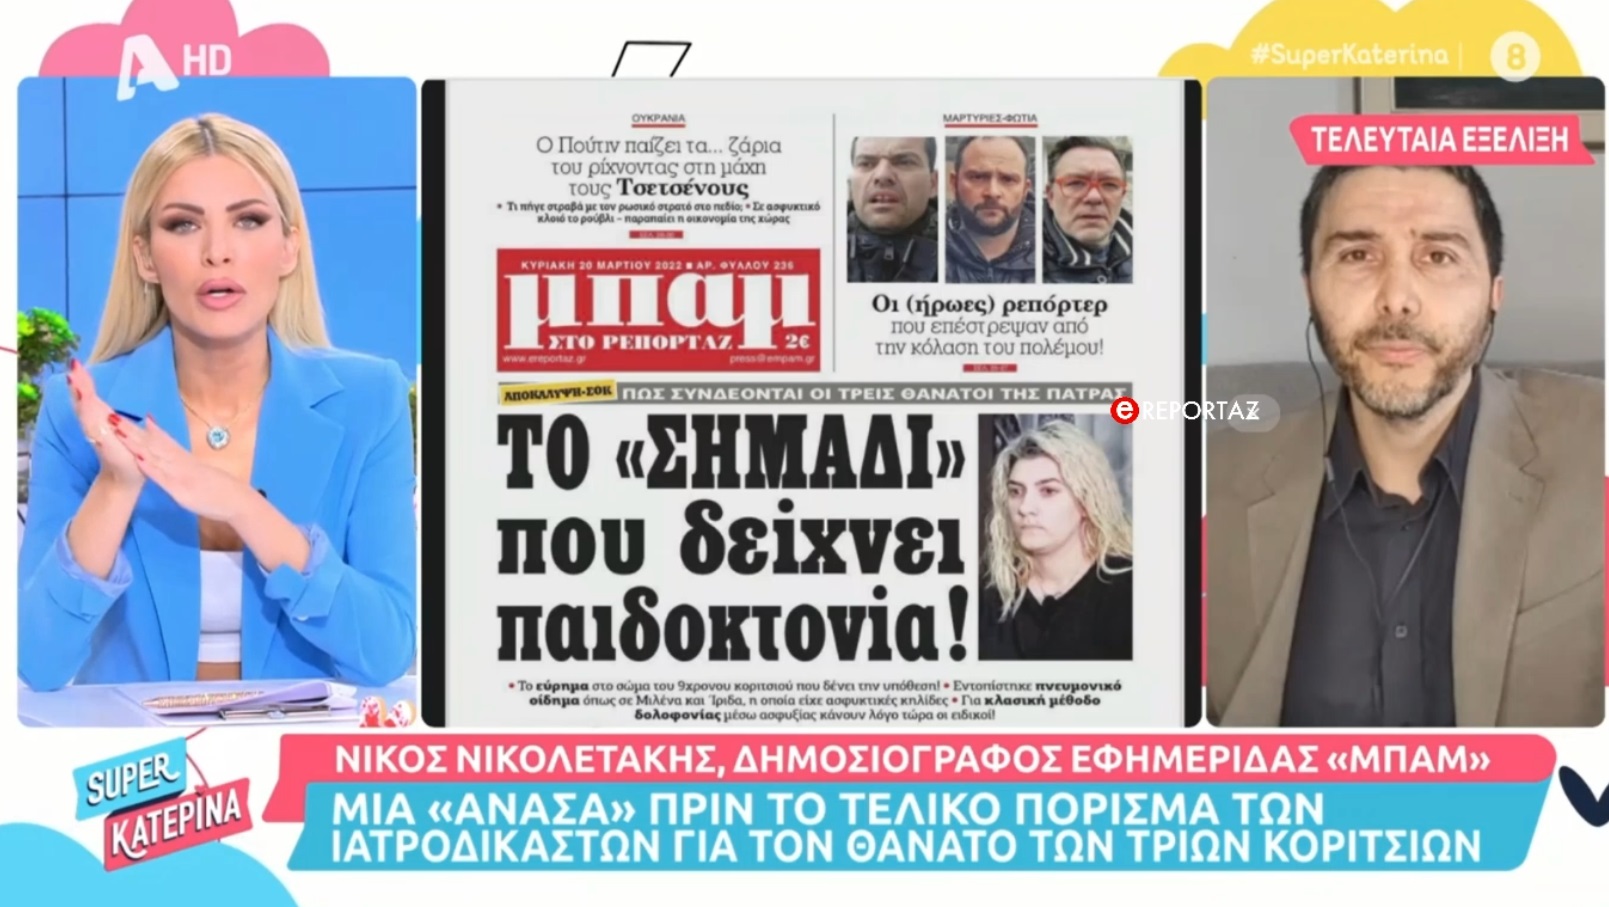 Πάτρα: Αίσθηση από τις αποκλειστικές αποκαλύψεις της "ΜΠΑΜ στο ρεπορτάζ" - Τι είπε για το θέμα στον ALPHA ο δημοσιογράφος Νίκος Νικολετάκης  (βίντεο)